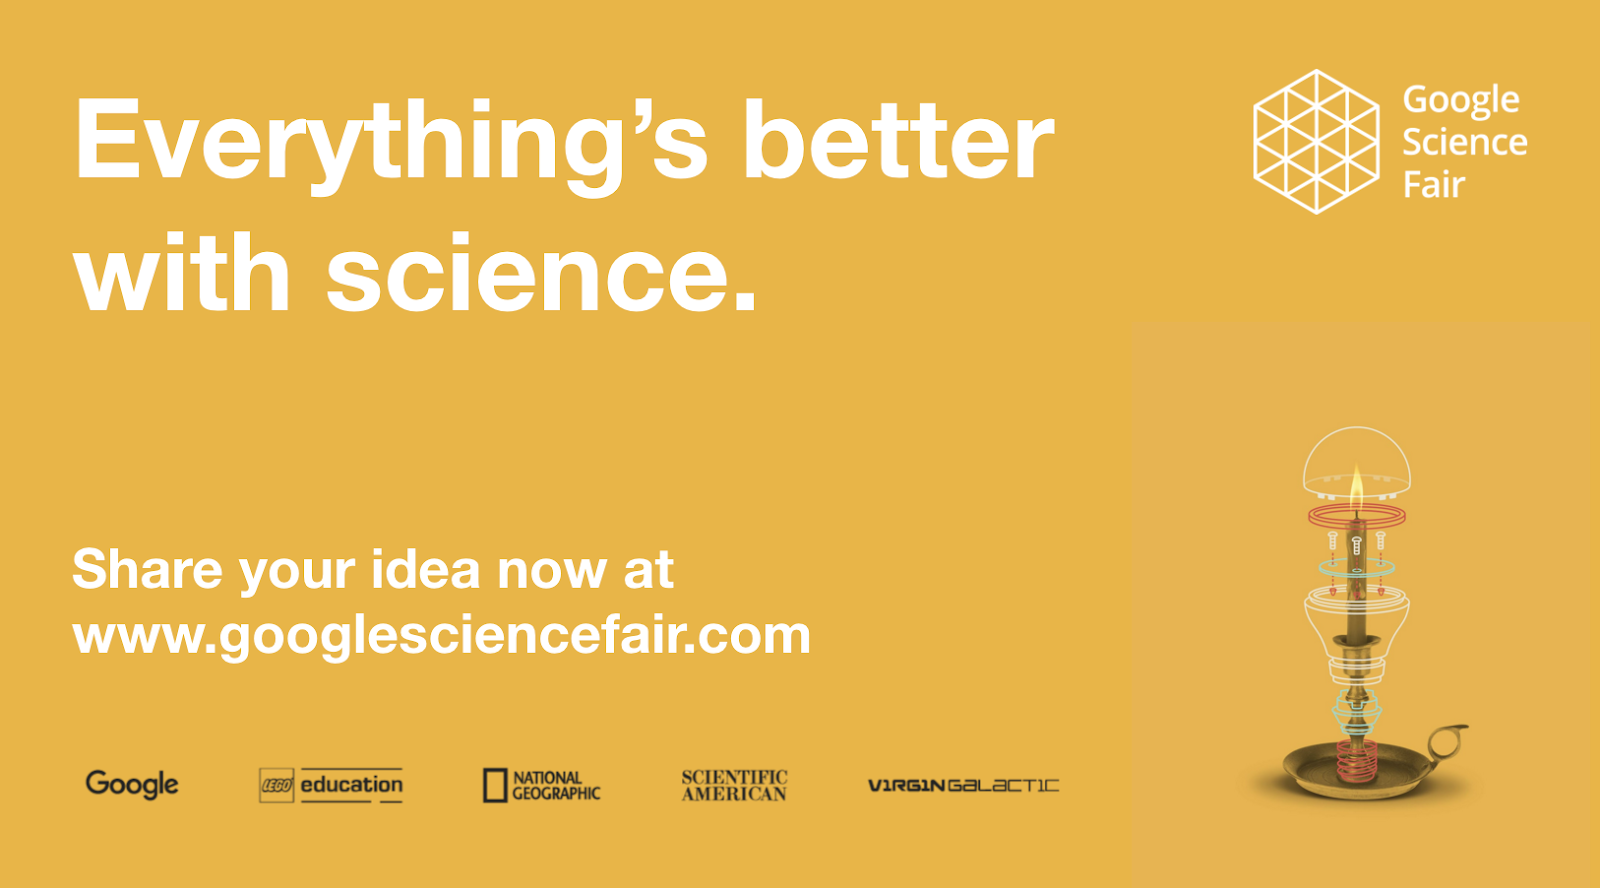 cette image dit "tout va mieux avec la science" partagez votre idée maintenant